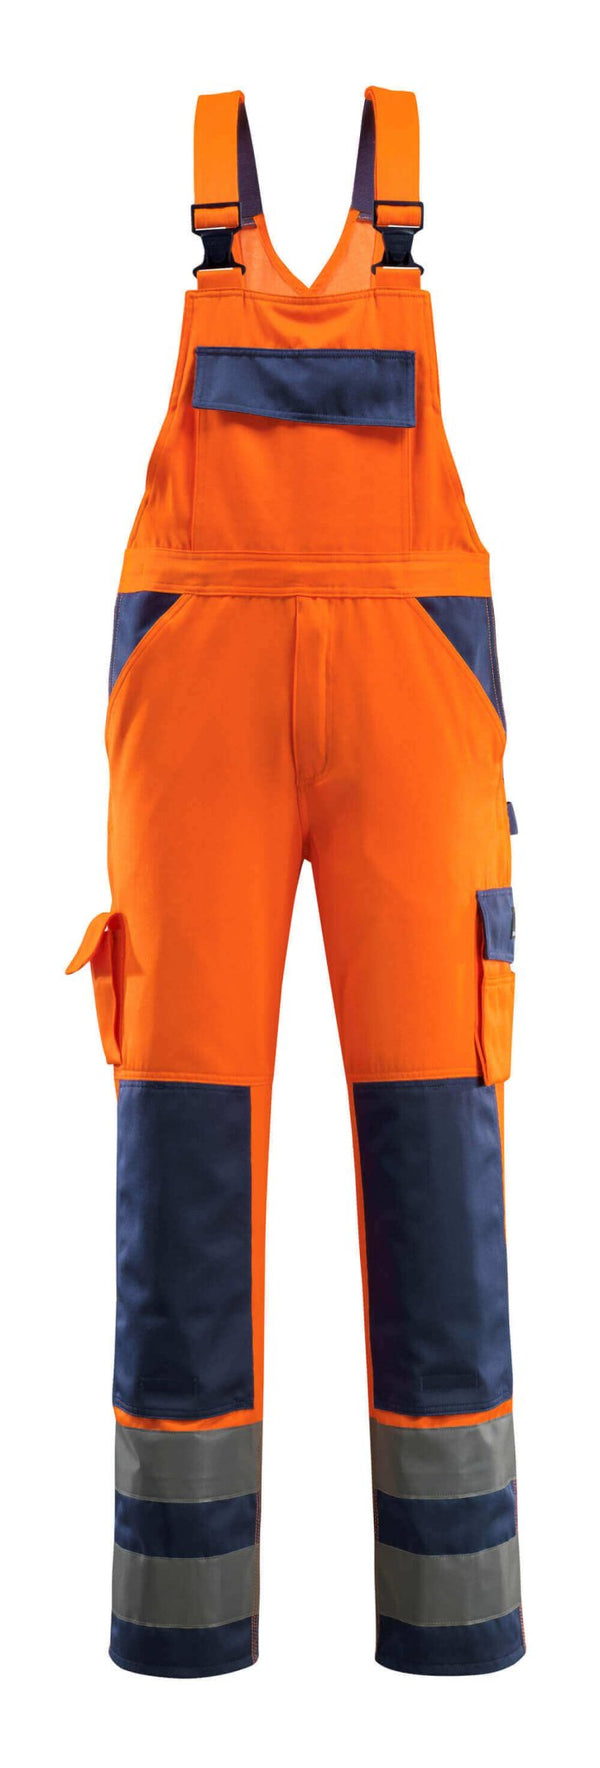 Avohaalari polvitaskuilla - 07169-860 - hi-vis oranssi/tummansininen - Safewear